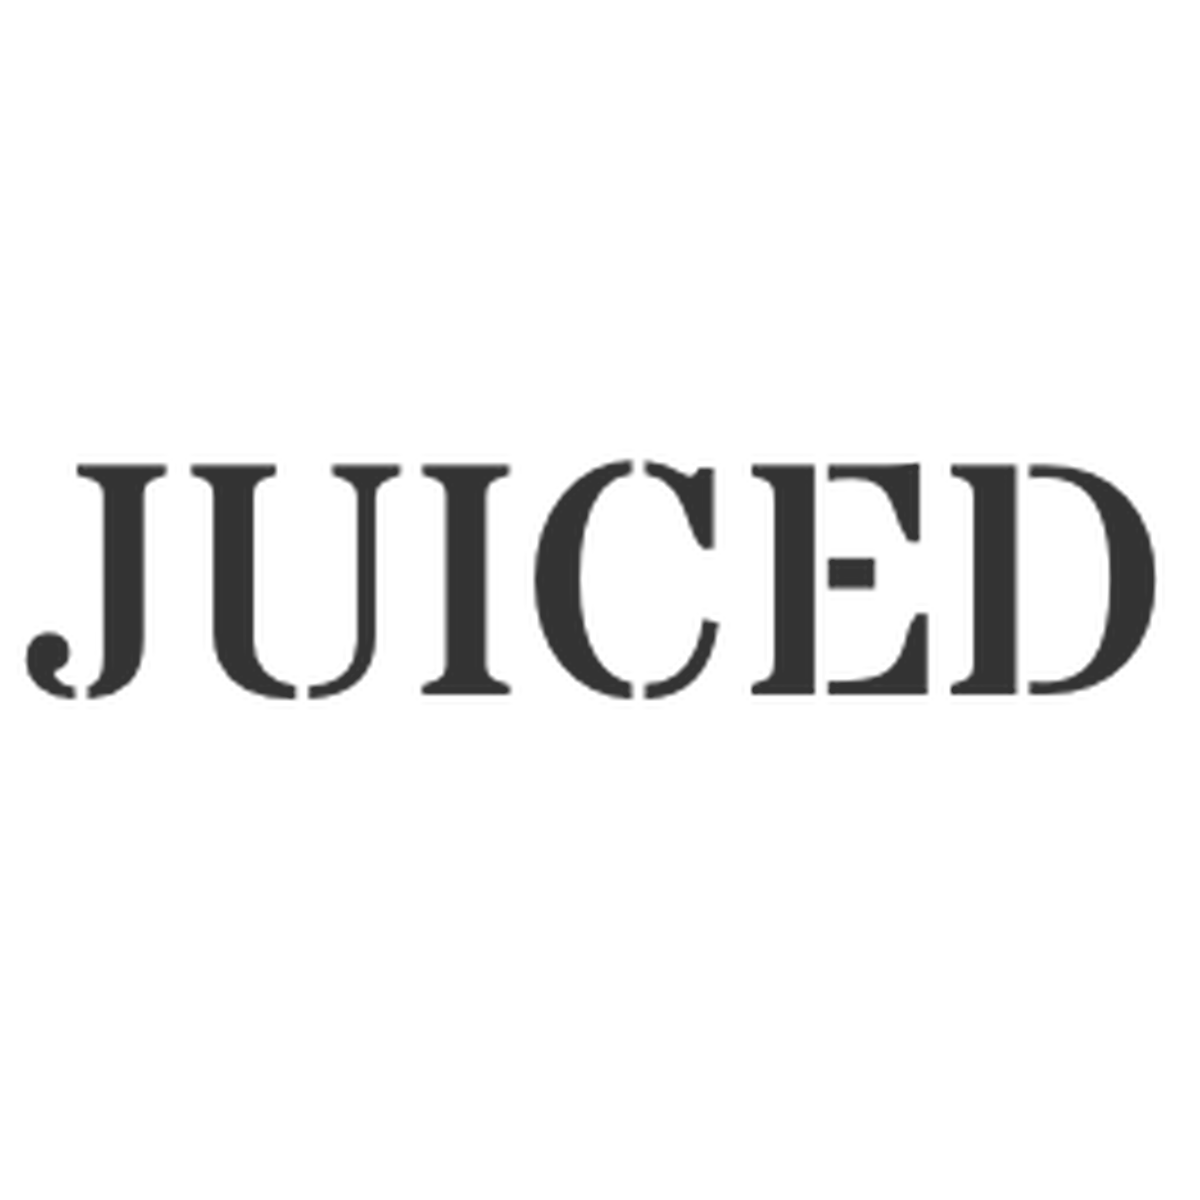 Juiced チャイナドレス ワンピースや個性的でセクシーな海外ファッションの通販